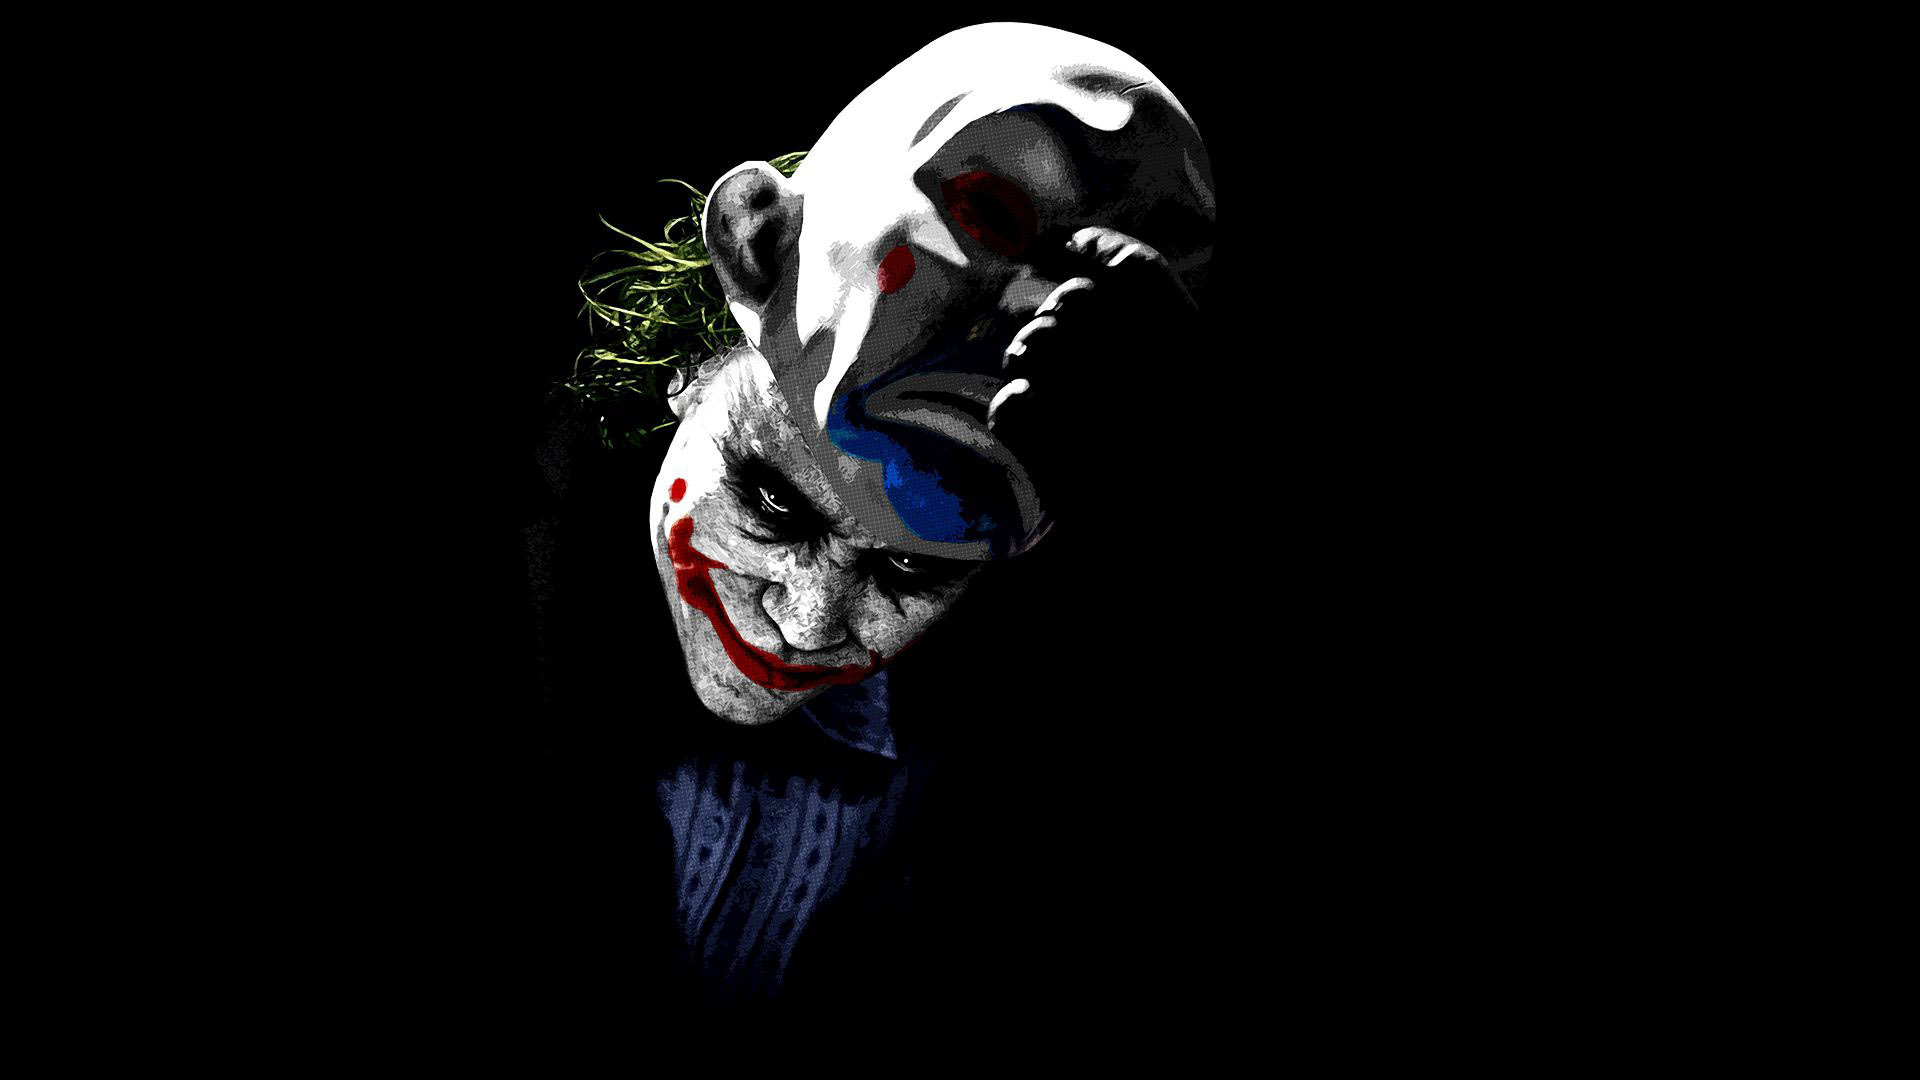 Dark Knight Joker Hd Wallpaper For Mobile